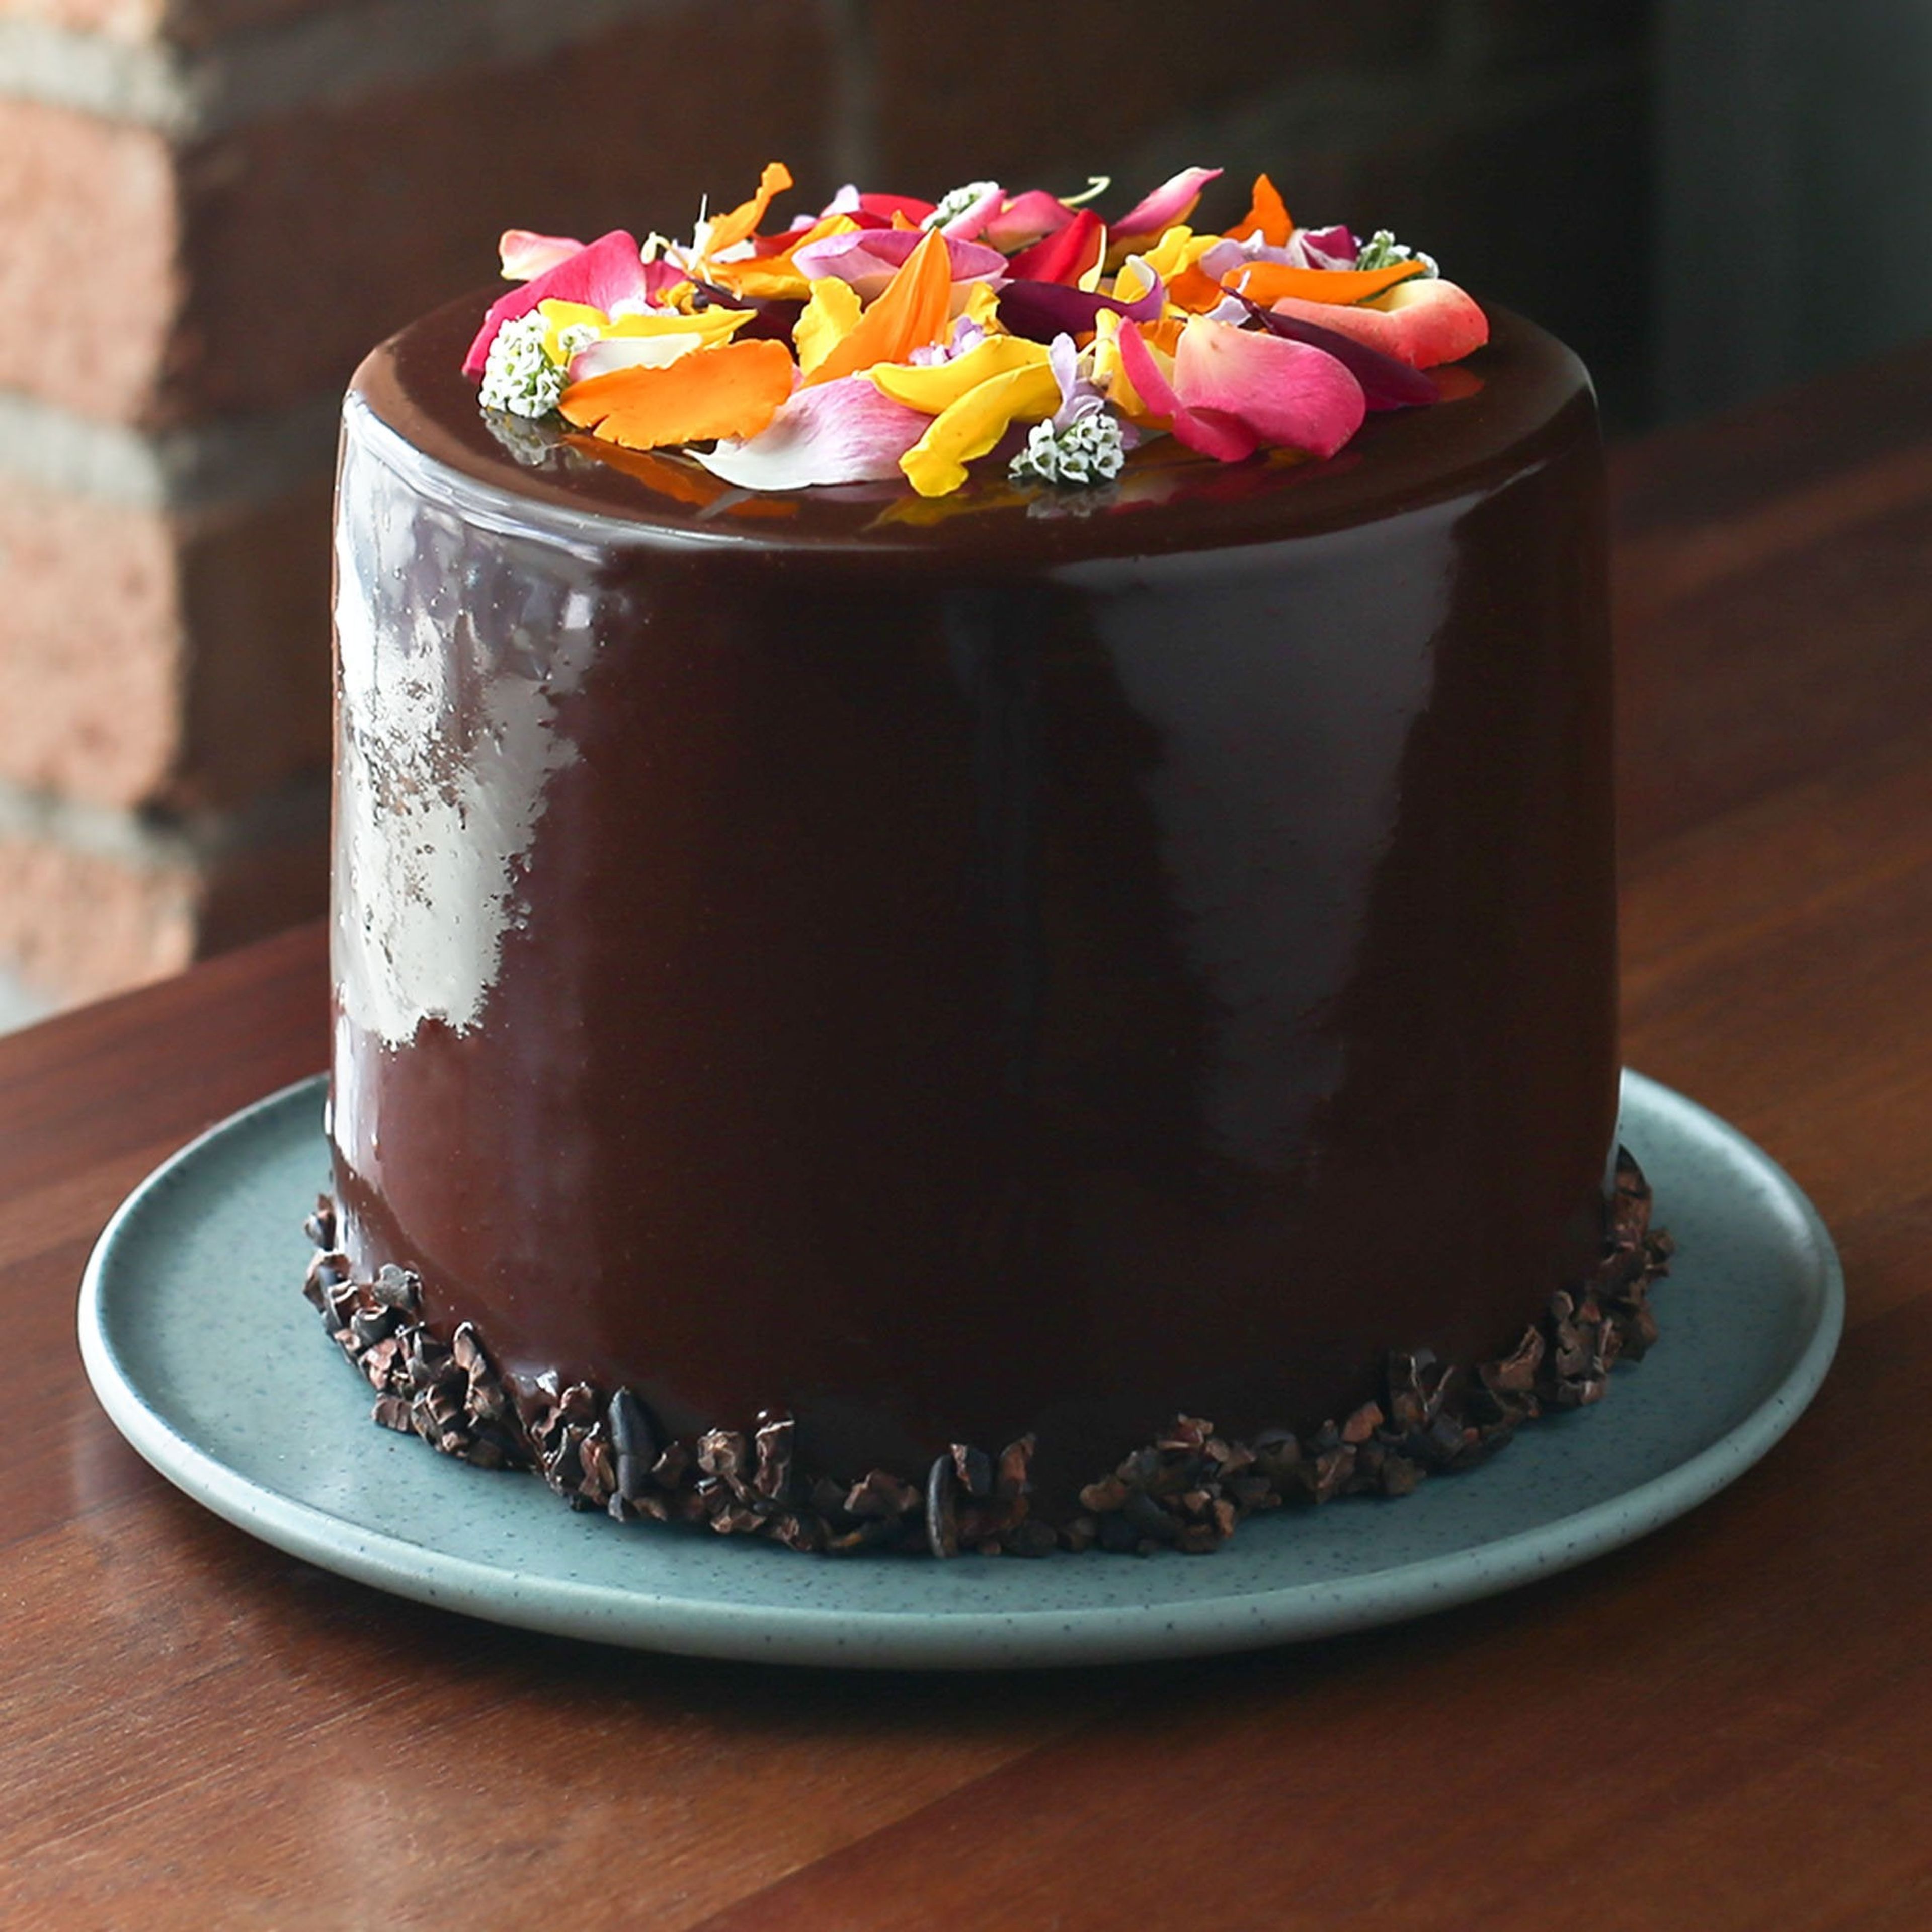 Chocolate Orange Celebration Cake – Gluten Free (with Orange Macaron)